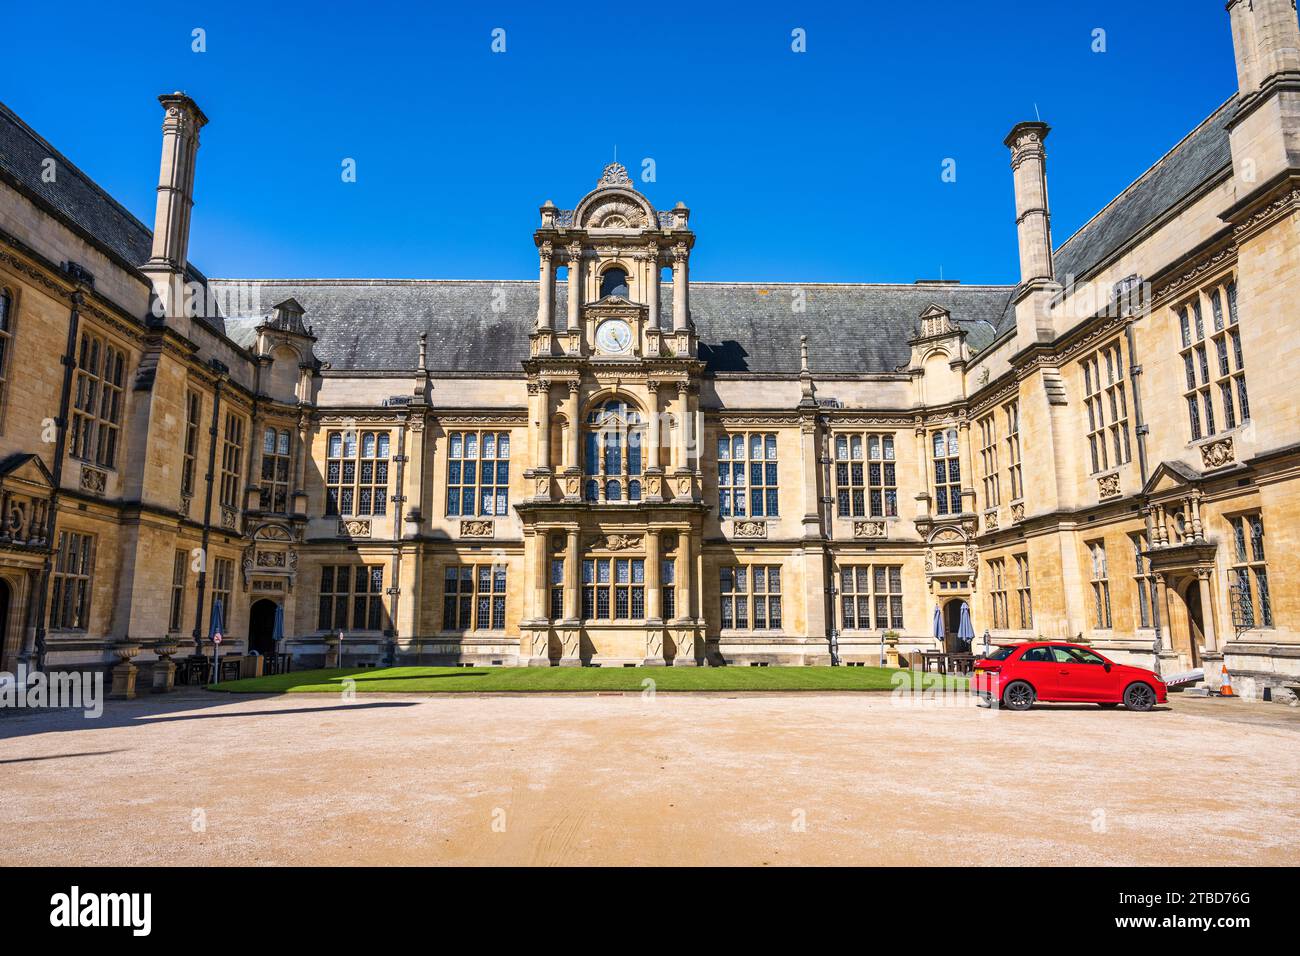 Viereck der Oxford University Examination Schools in der Merton Street im Oxford City Centre, Oxfordshire, England, Großbritannien Stockfoto